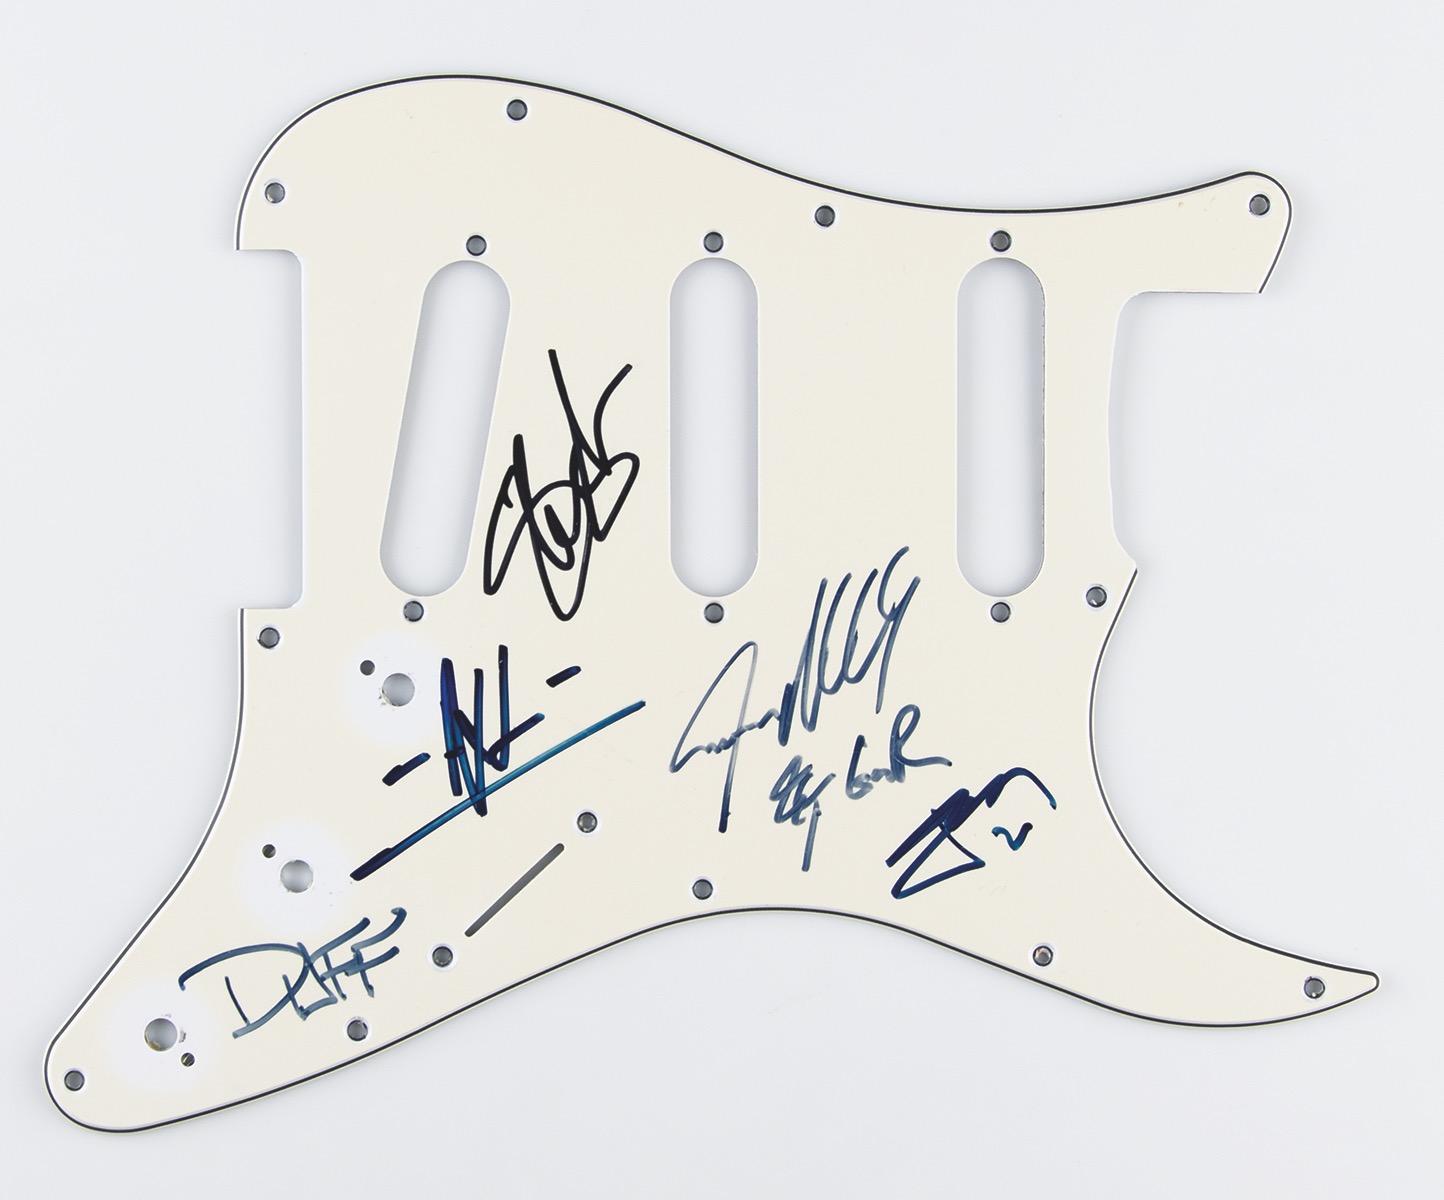 Lot #478 Guns N' Roses Signed Pickguard